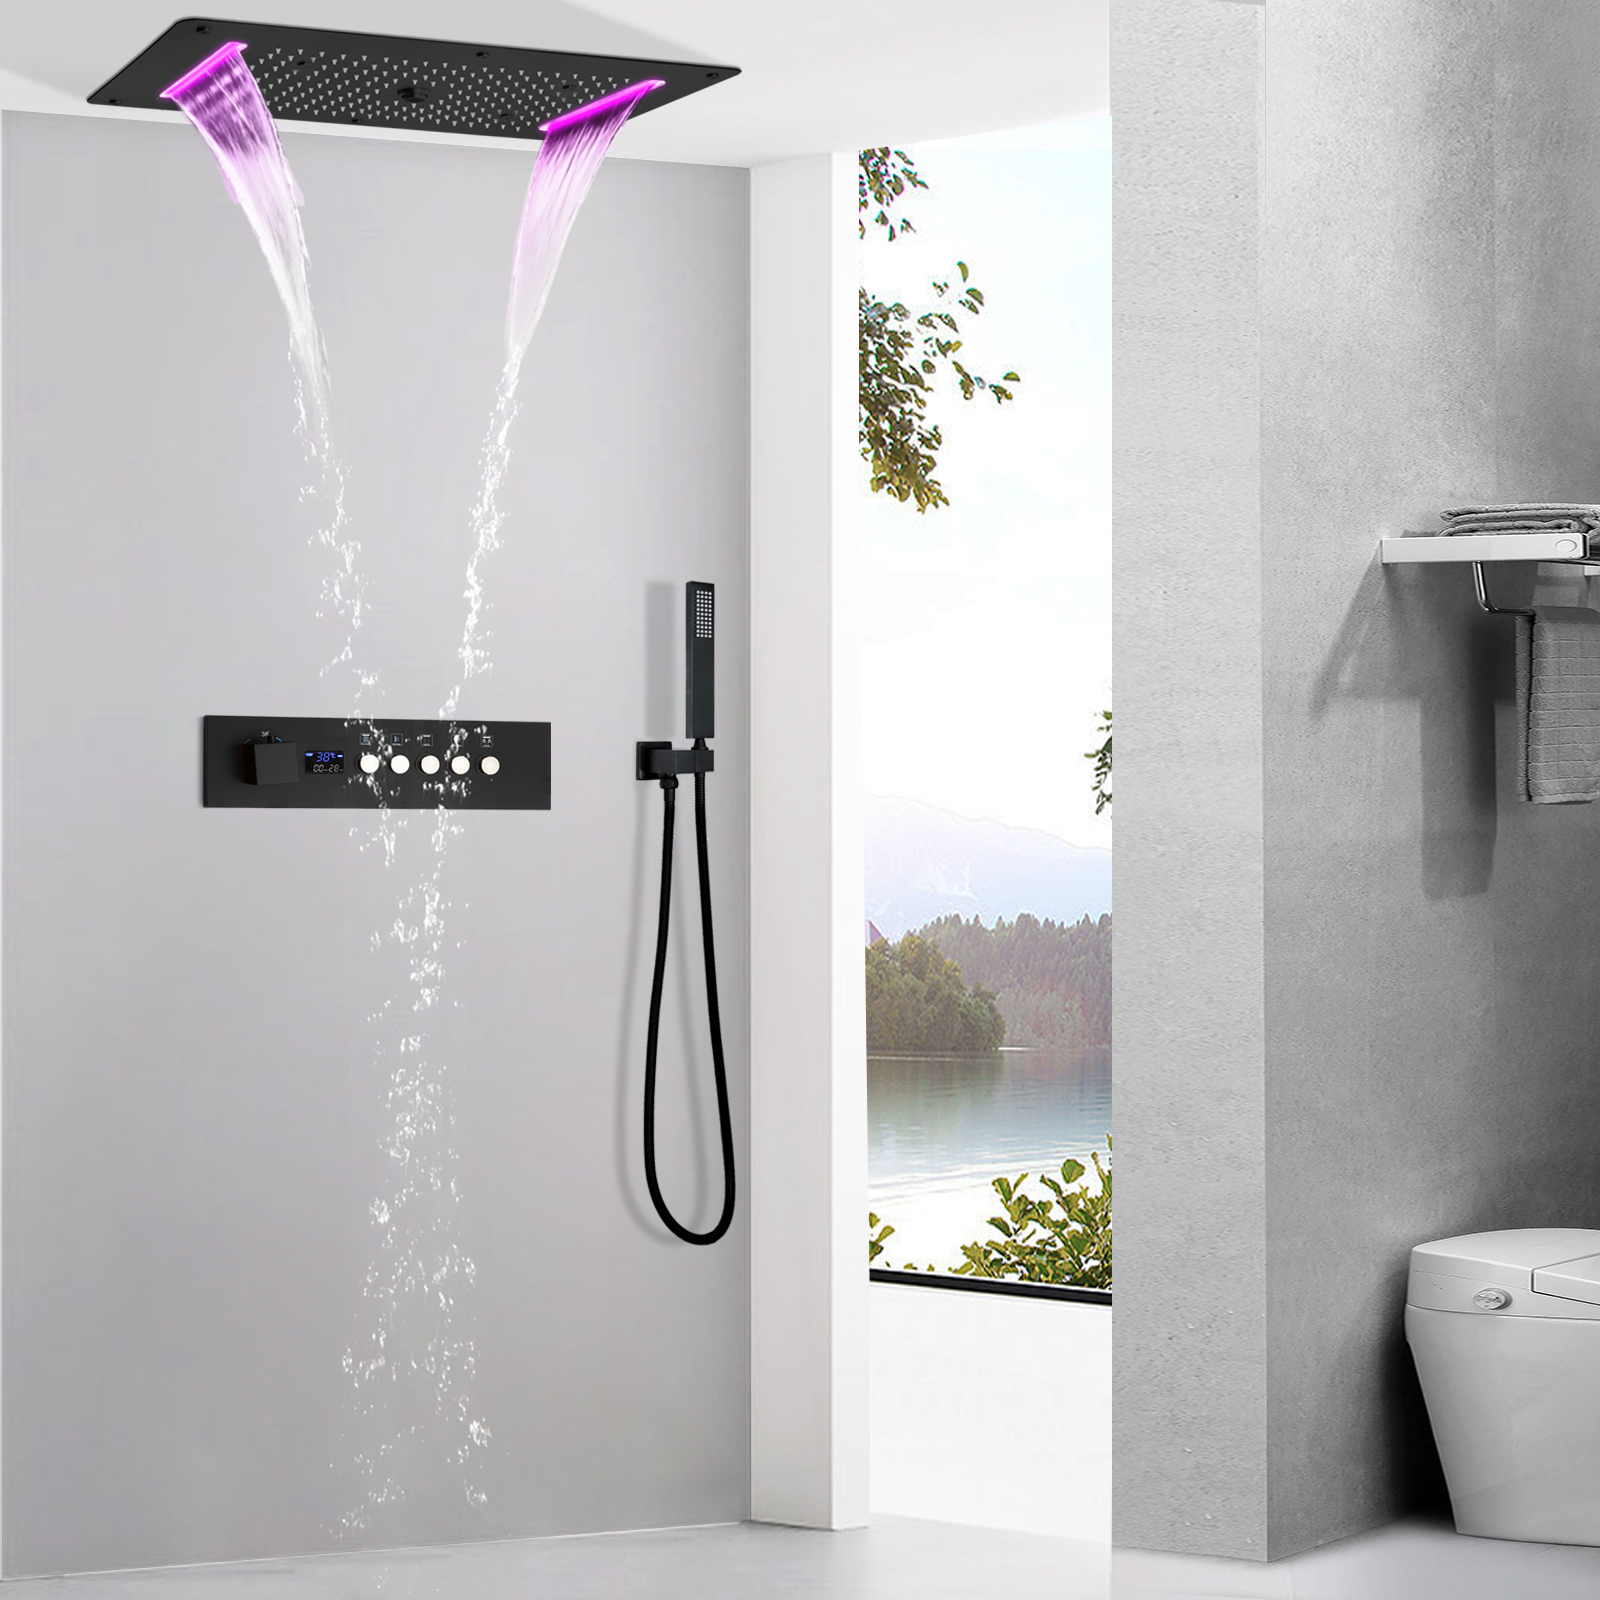 Sistema de chuveiro cascata escuro fosco, sistema de chuveiro com display digital de led, válvula termostática, chuveiro de spa, conjunto de torneira